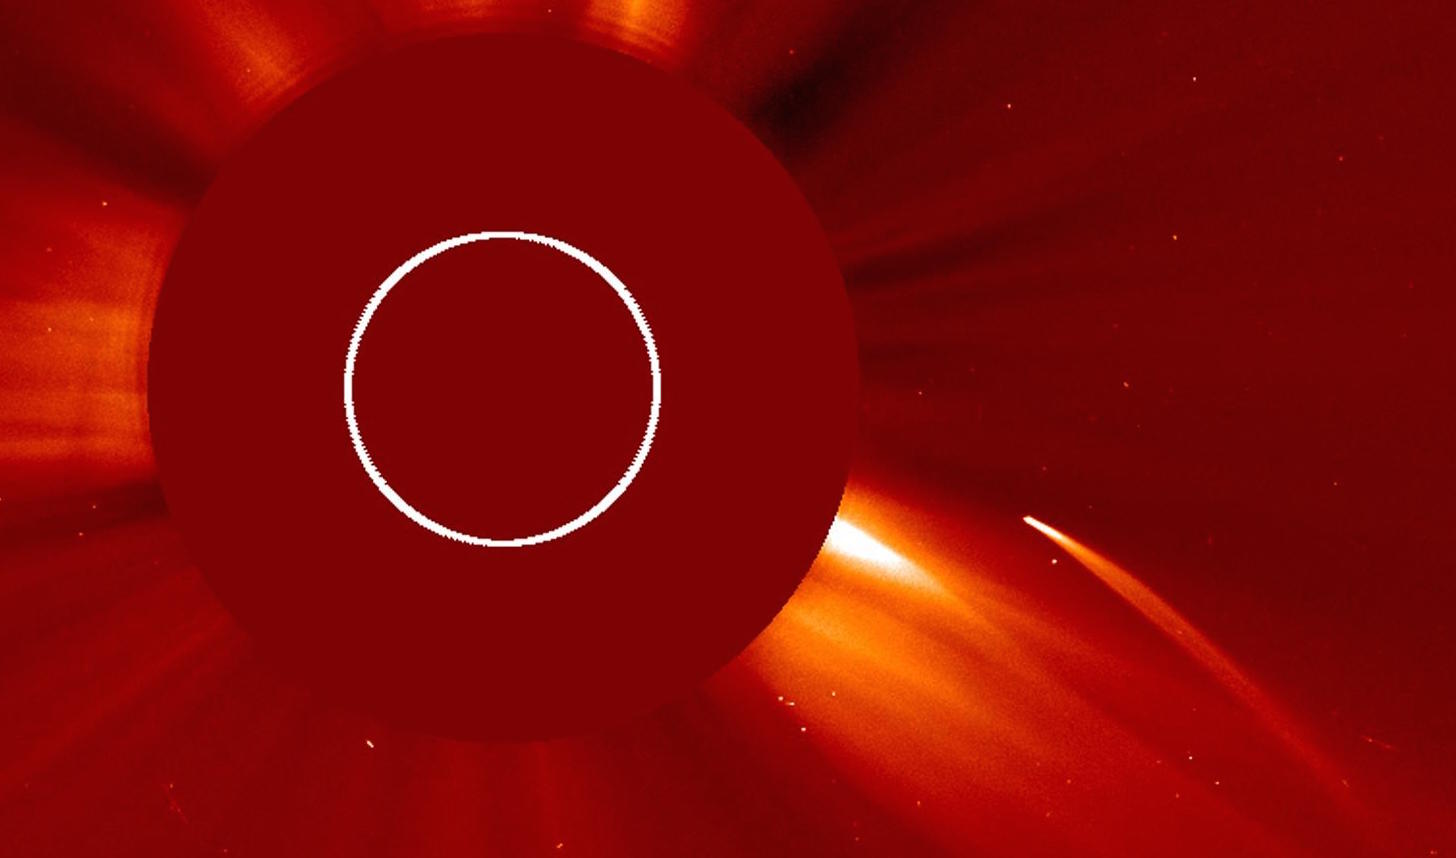 Közel 3000 üstököst fedezett fel idáig a SOHO napszonda